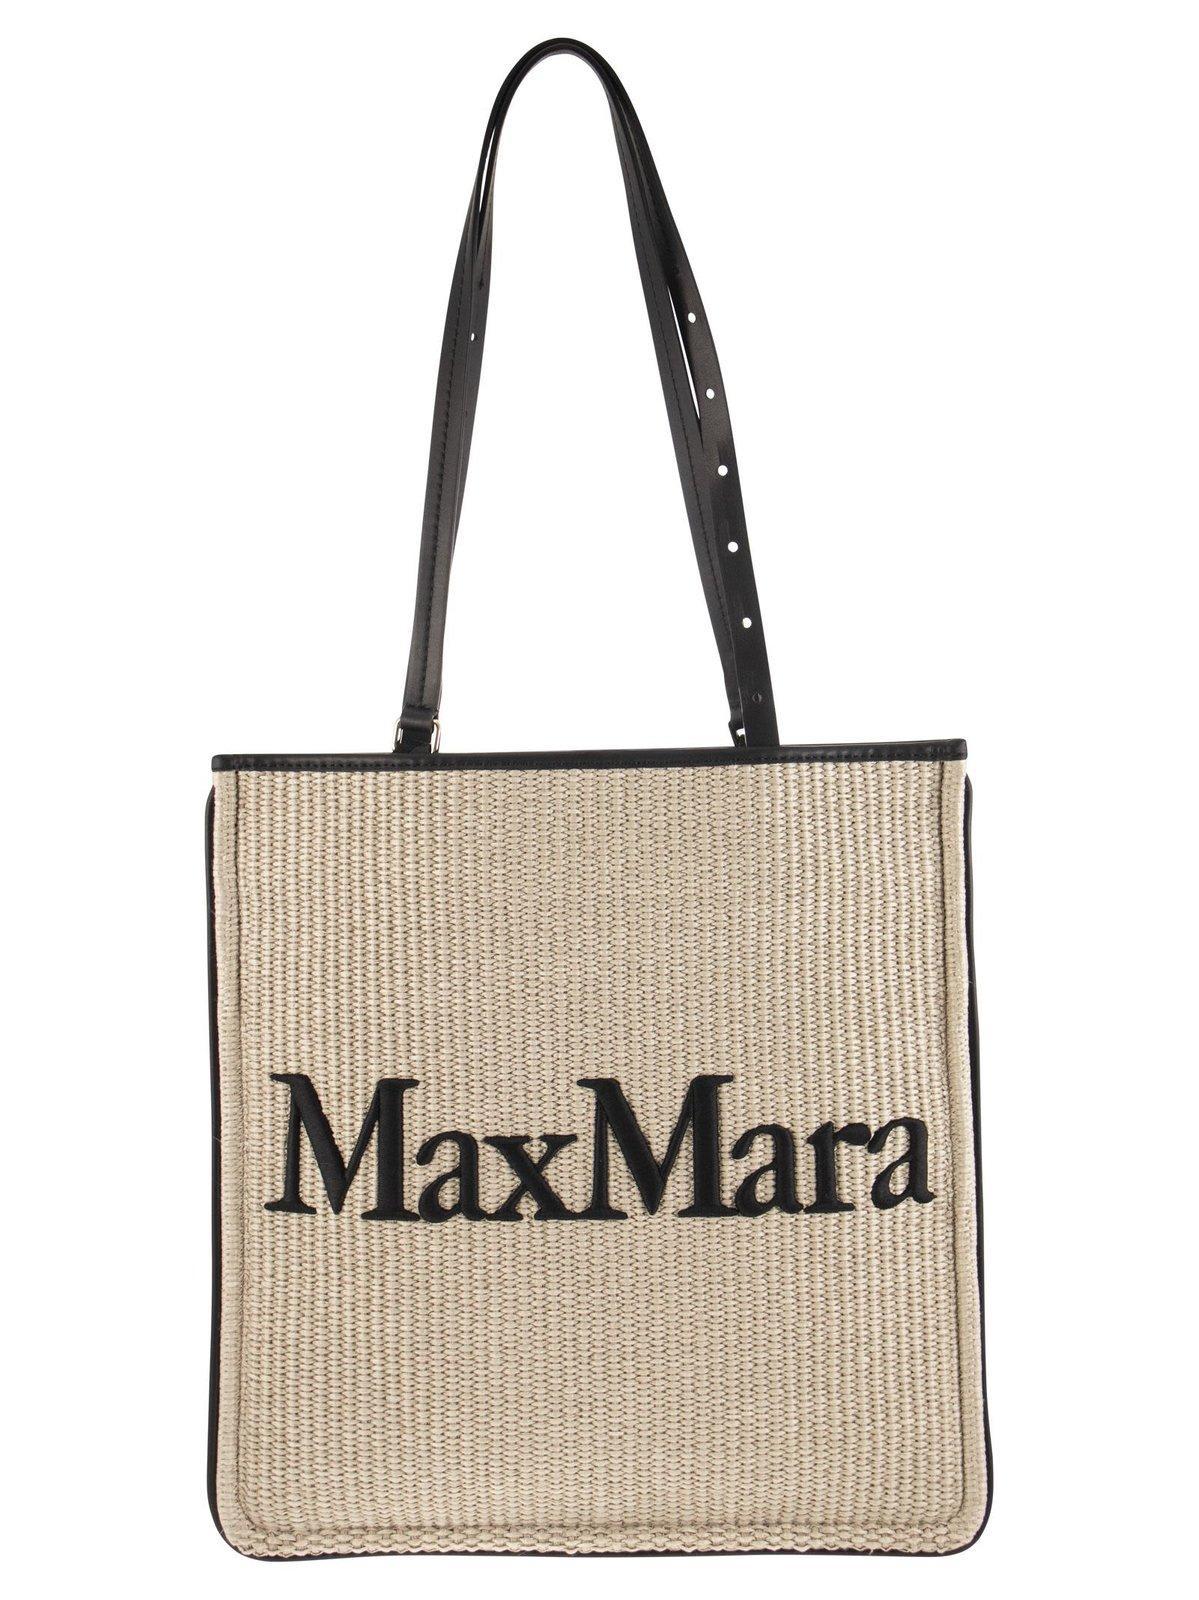 Max Mara Logo-detailed Tote Bag in Natural | Lyst